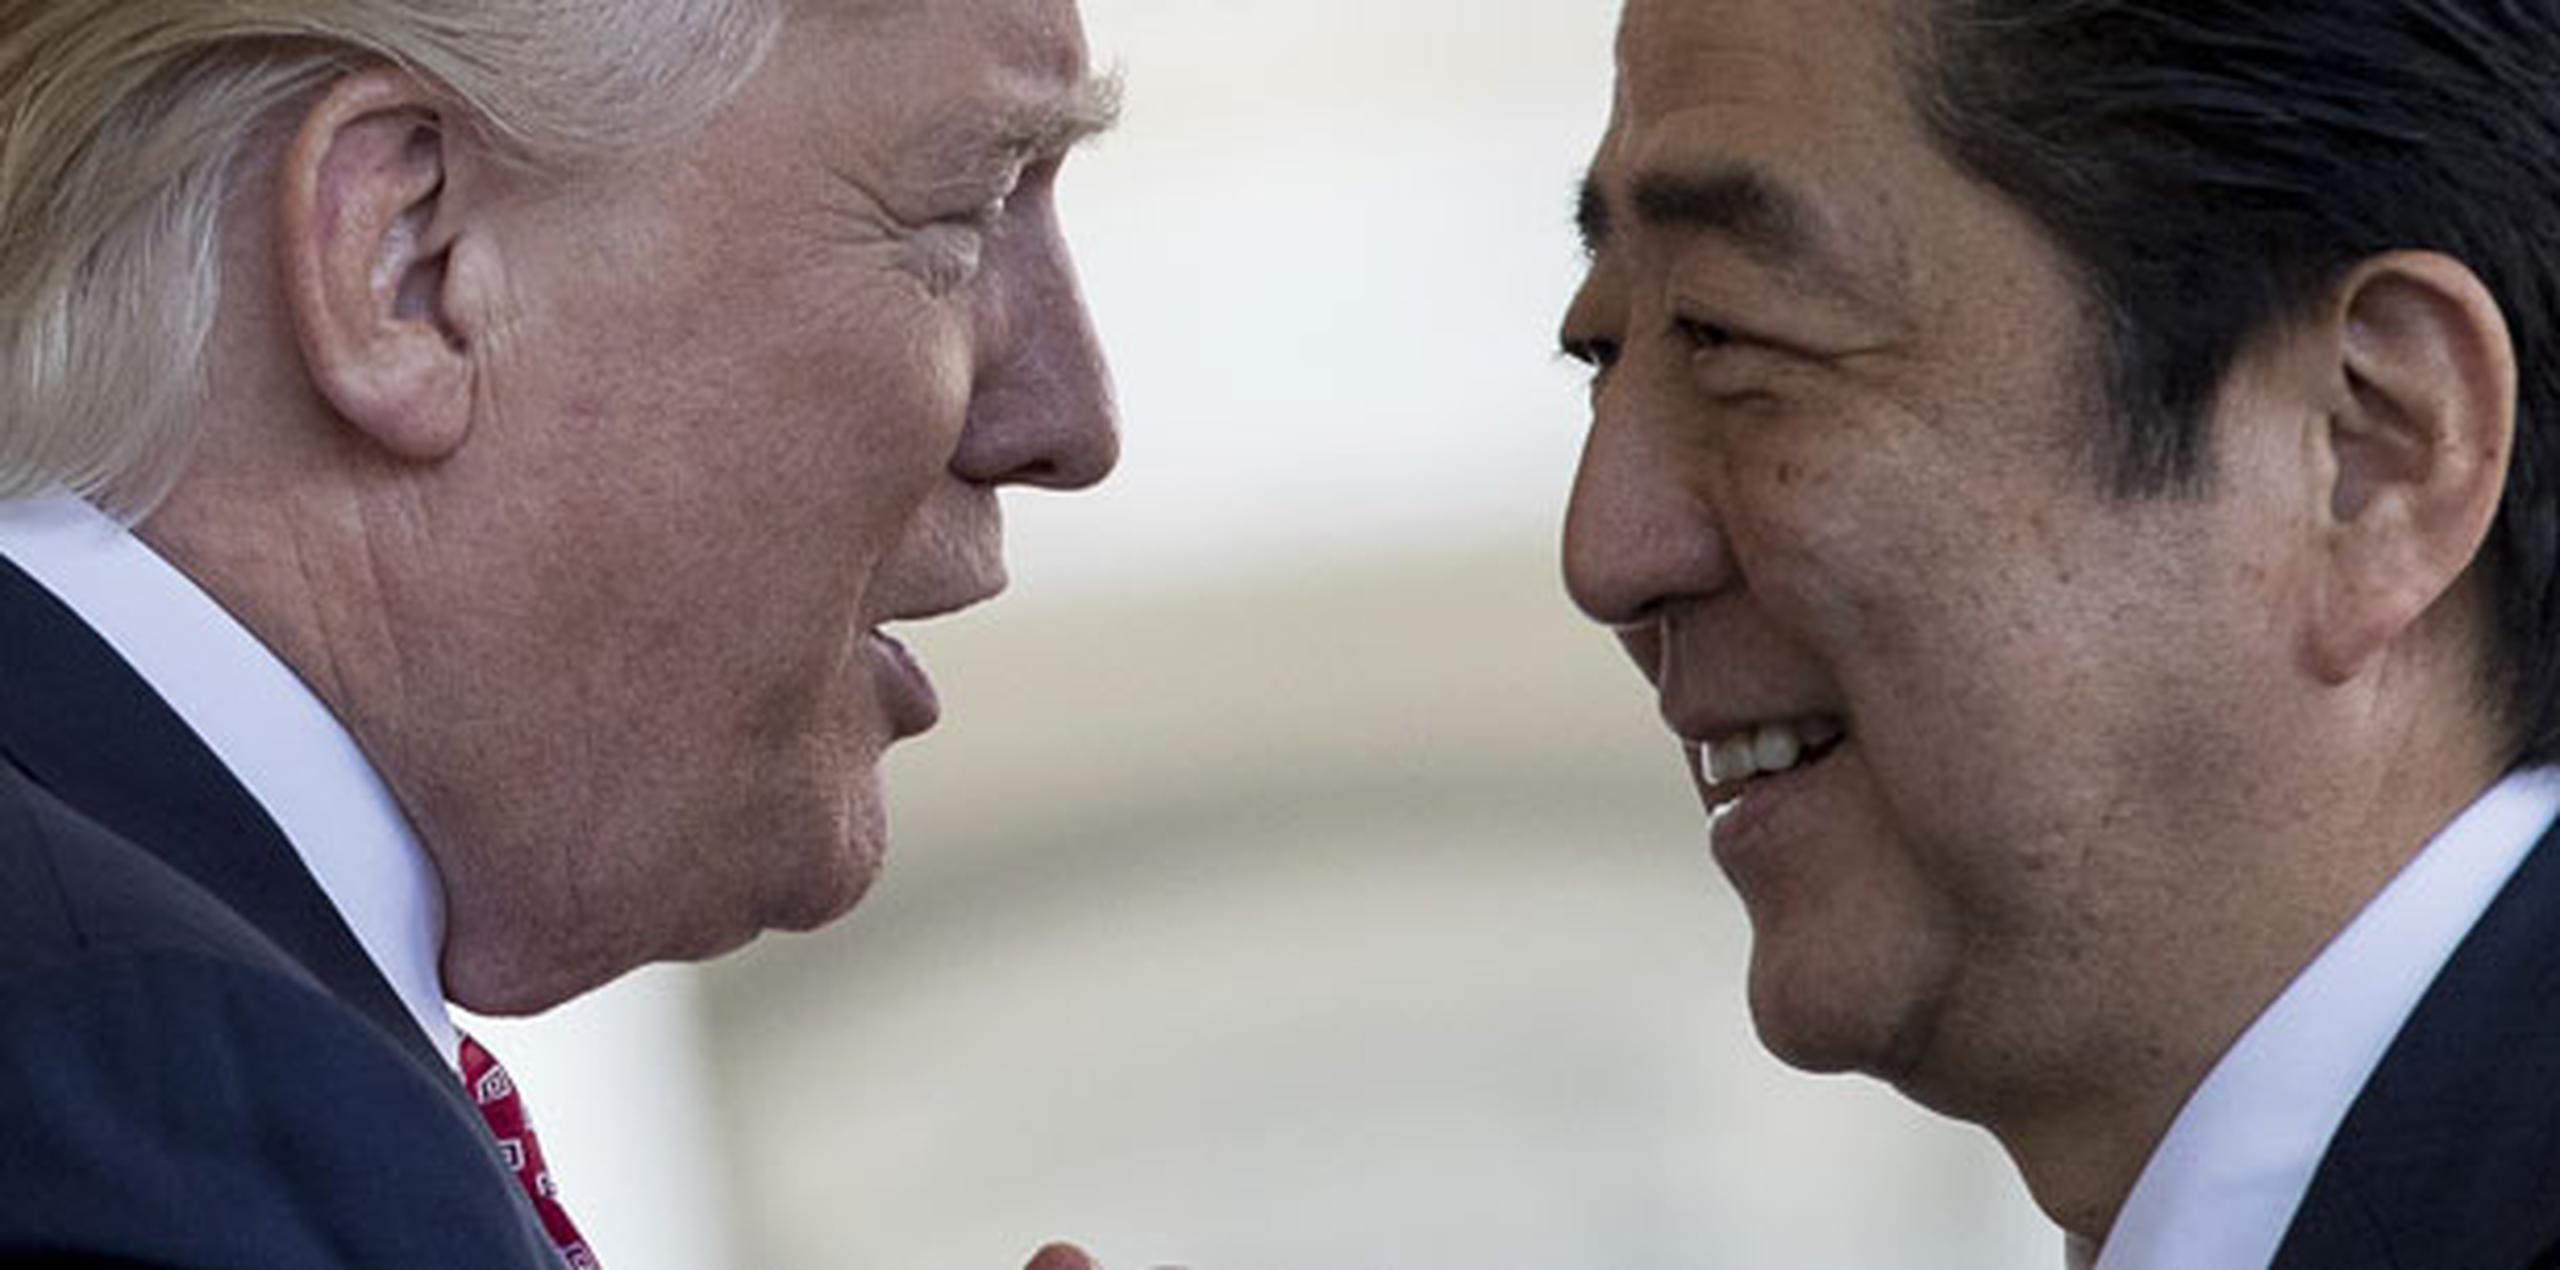 El primer ministro Shinzo Abe ha tratado de ayudar a aliviar las tensiones entre Washington y Teherán, cuyas relaciones se deterioraron desde que el presidente Donald Trump retiró a Estados Unidos del acuerdo nuclear de 2015 entre Irán y las potencias mundiales. (Archivo)